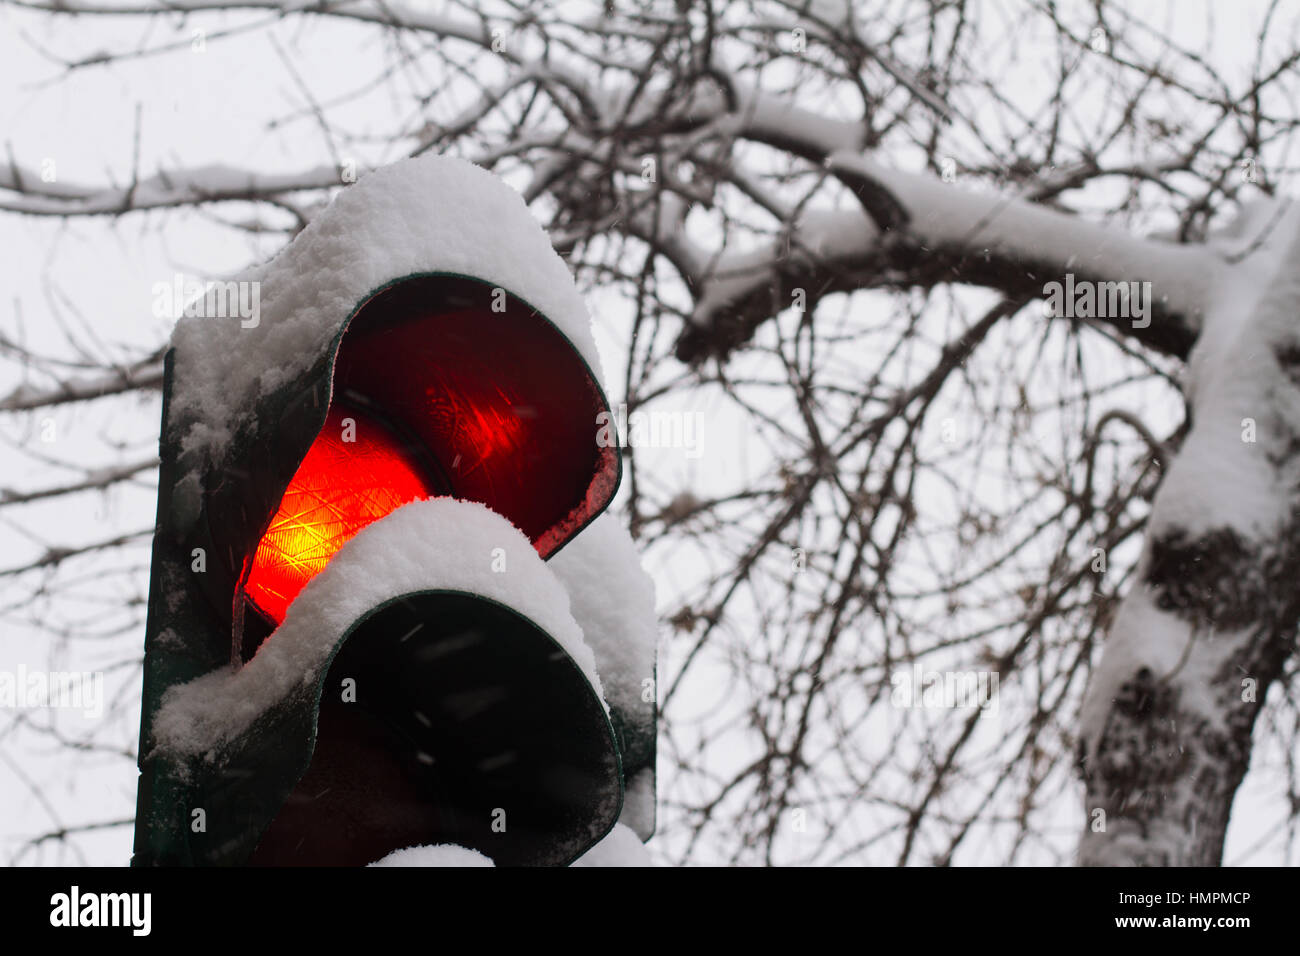 Près de cesser le feu rouge recouverts de neige en hiver, avec des arbres en arrière-plan Banque D'Images